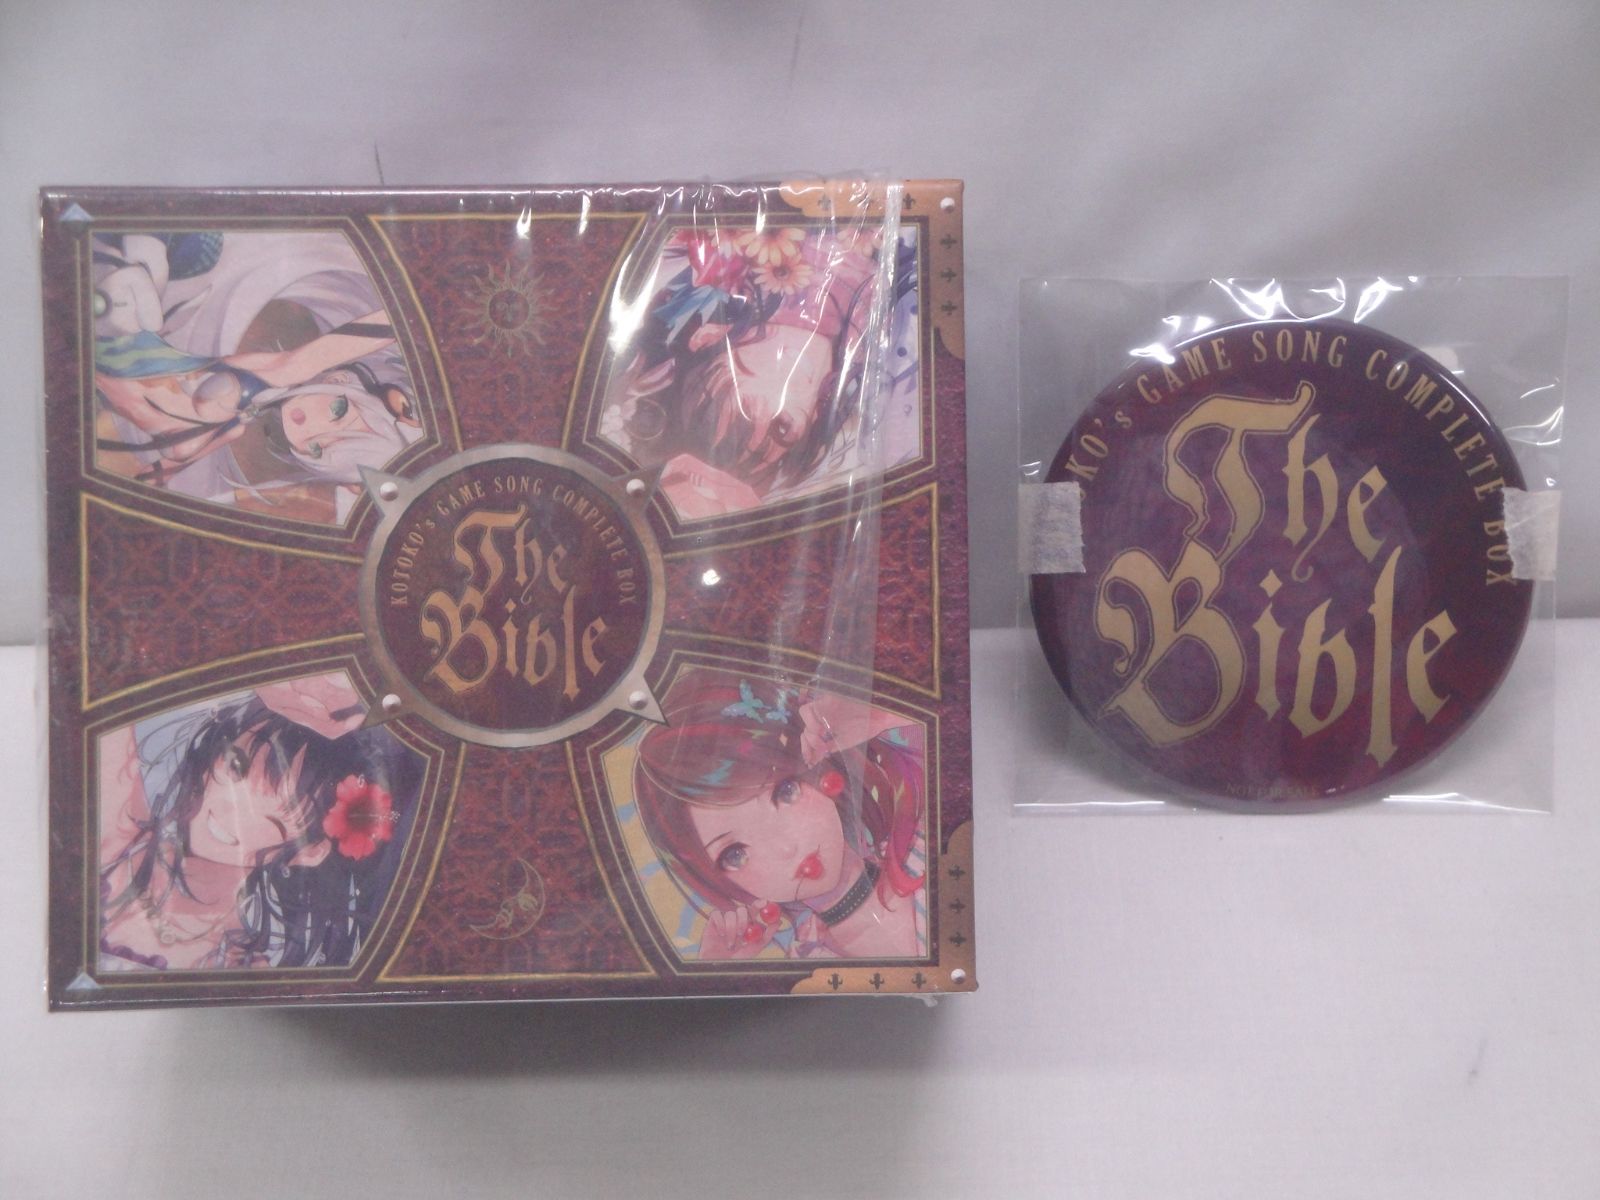 【CD】KOTOKO’s GAME SONG COMPLETE BOX The Bible 初回限定盤 10CD + Blu-ray  GNCA-1568 314